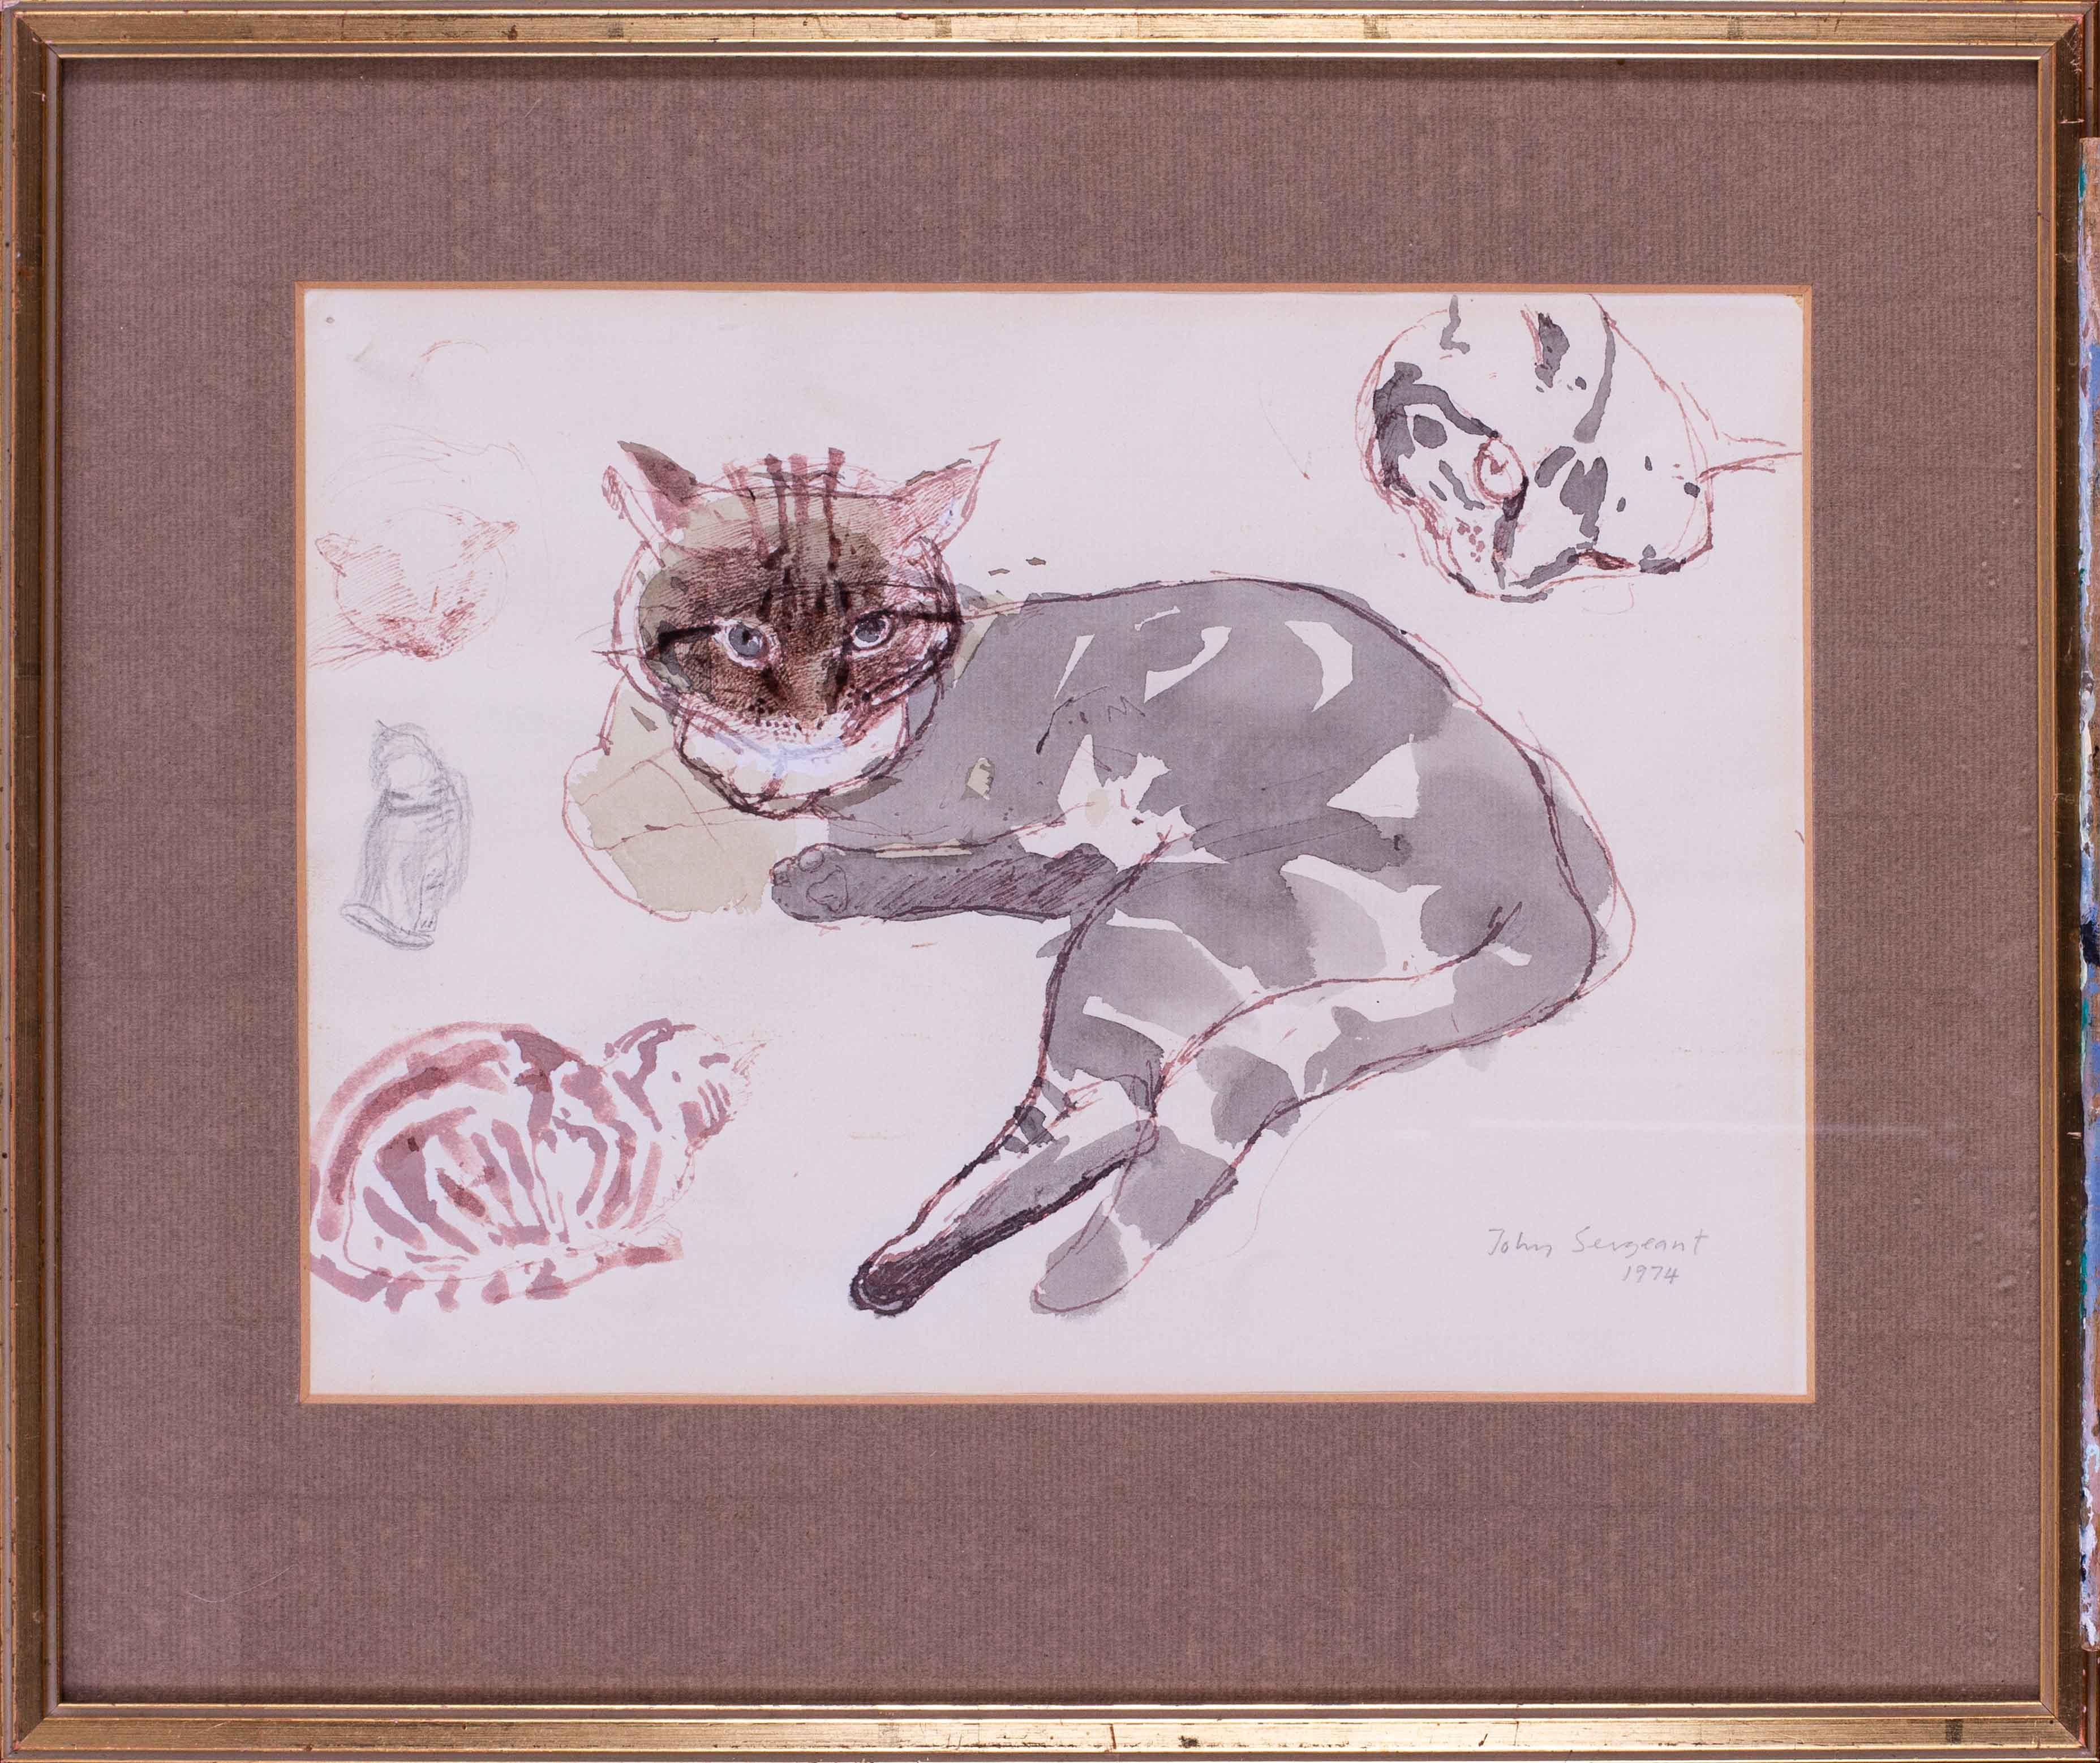 « Studios of a tabby cat », techniques mixtes sur papier de l'artiste britannique John Sergeant